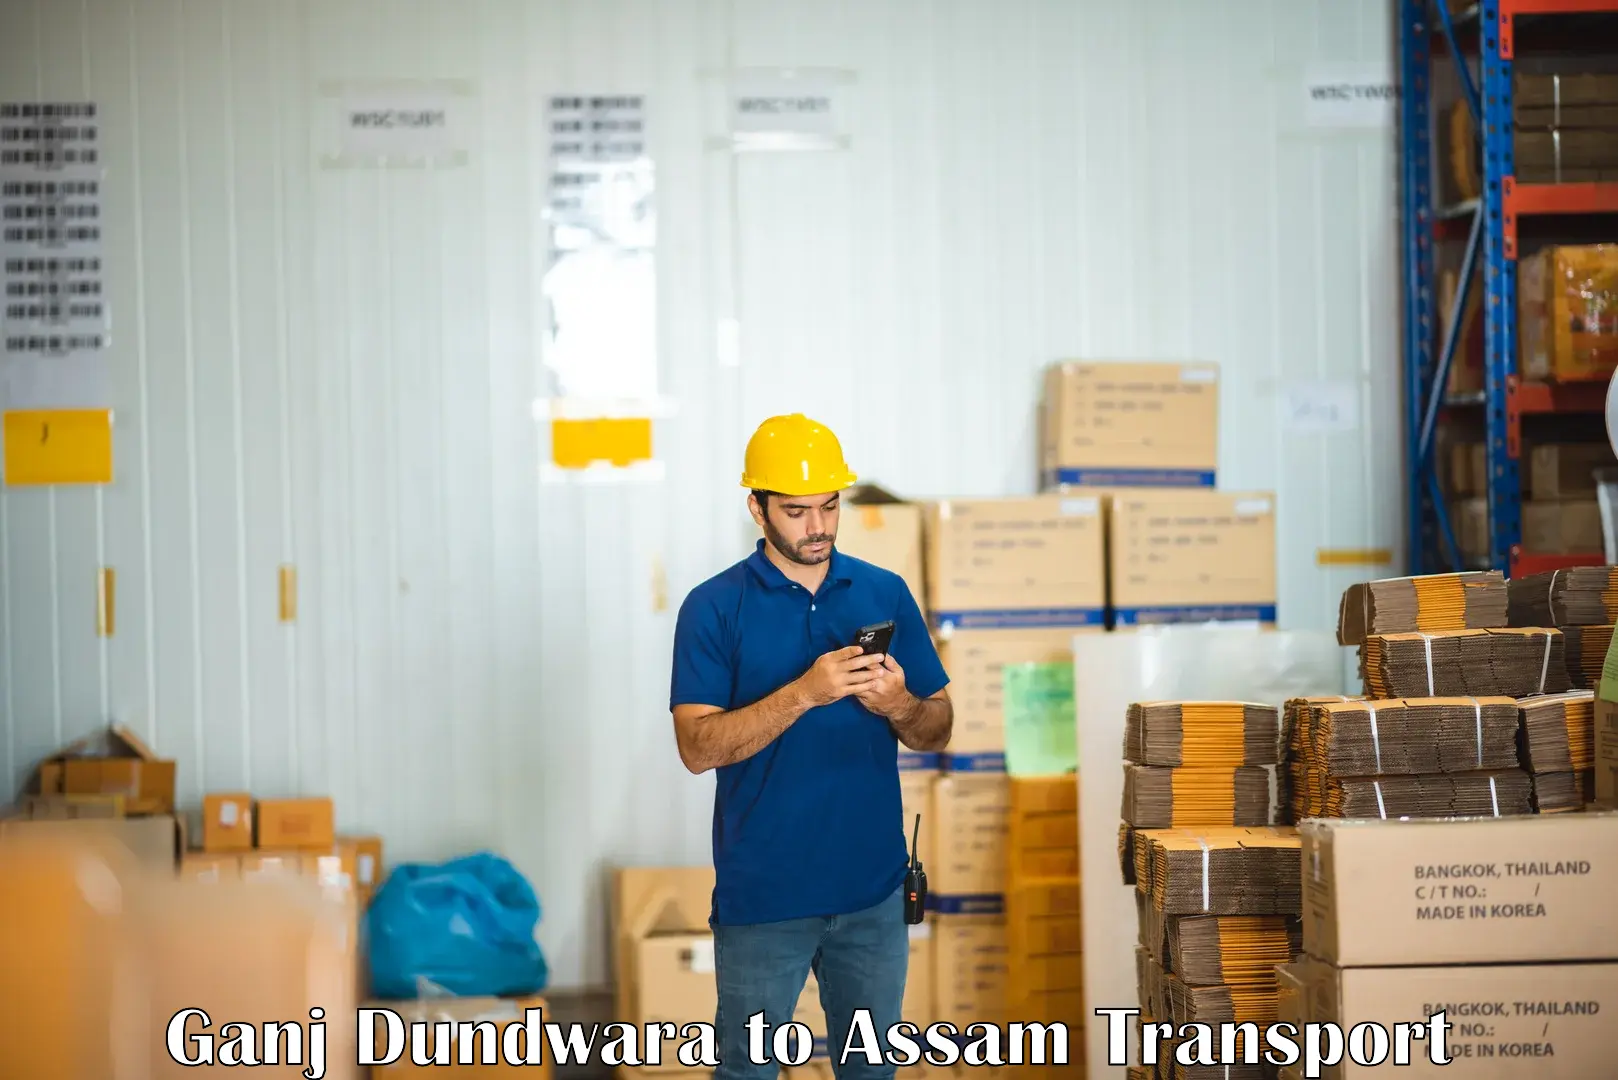 Nationwide transport services Ganj Dundwara to Assam